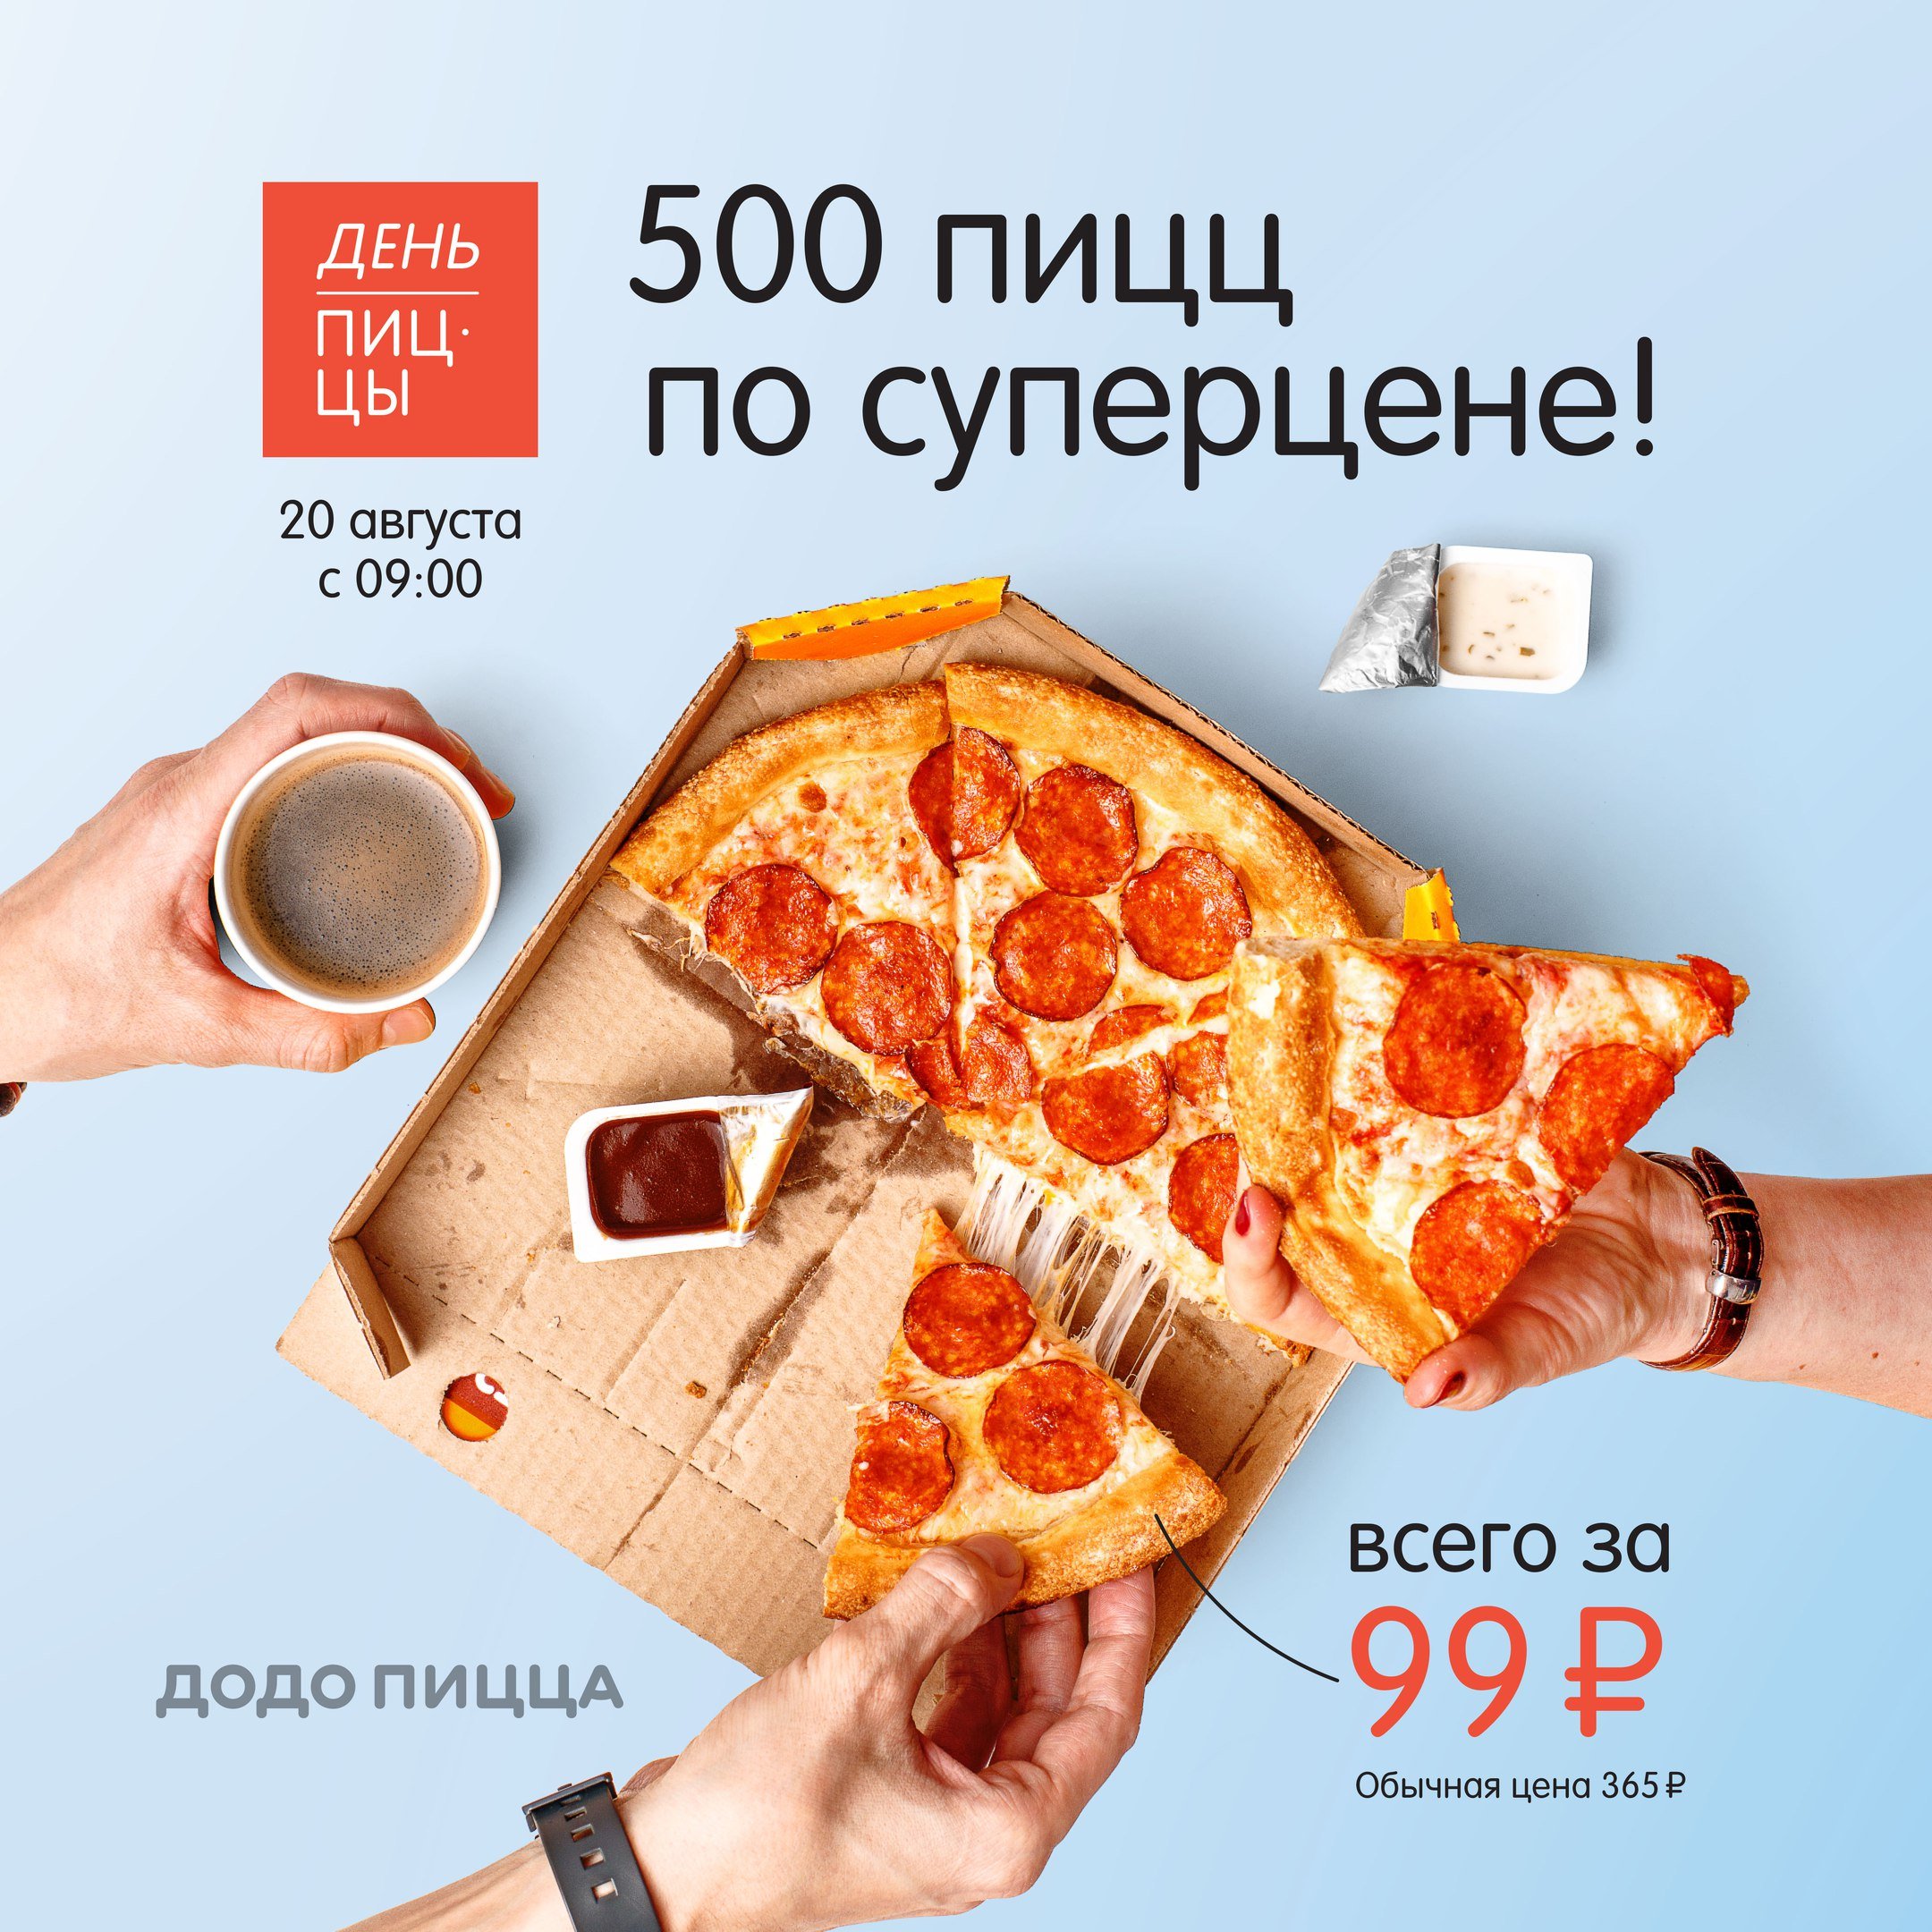 Додо пицца реклама